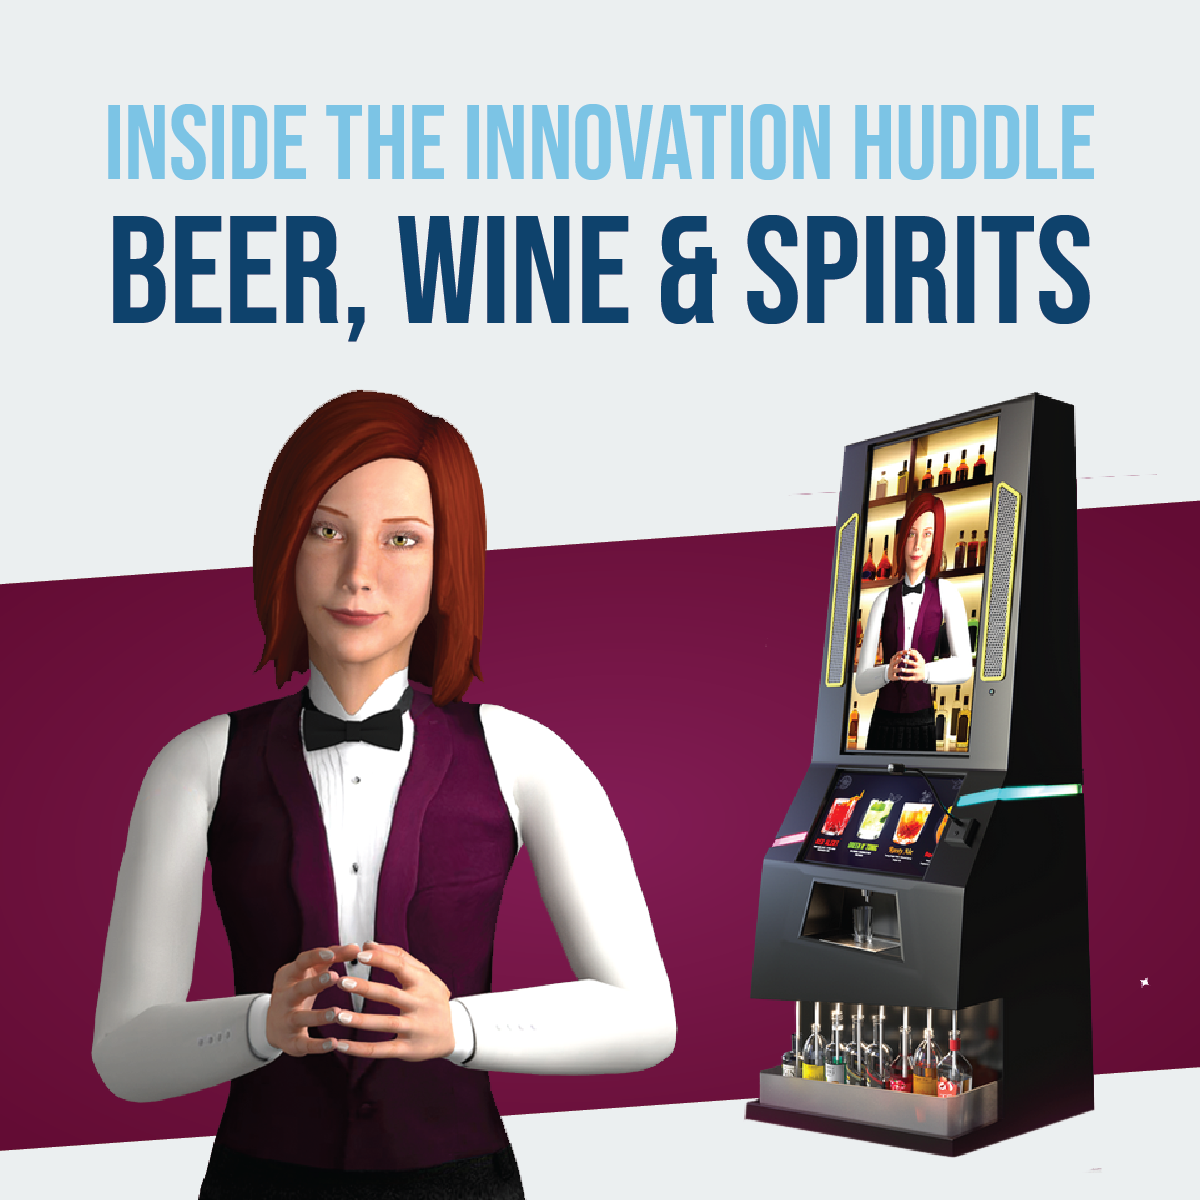 Beer, Wine & Spirits_Inside The Innovation Huddle